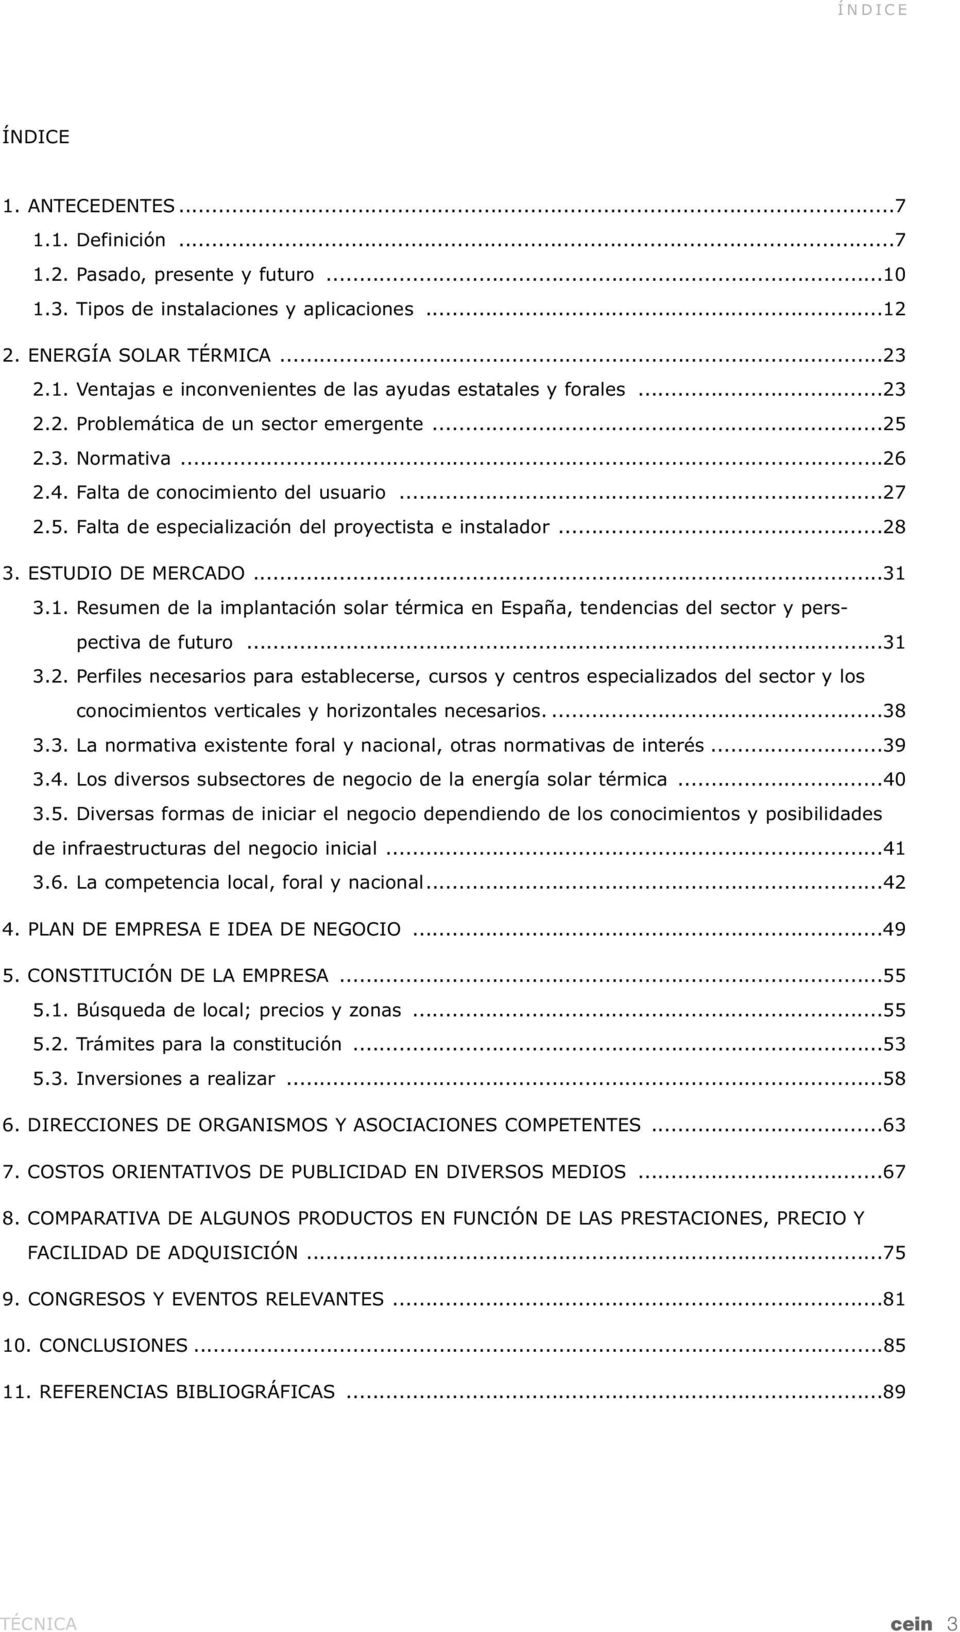 ESTUDIO DE MERCADO...31 3.1. Resumen de la implantación solar térmica en España, tendencias del sector y perspectiva de futuro...31 3.2.